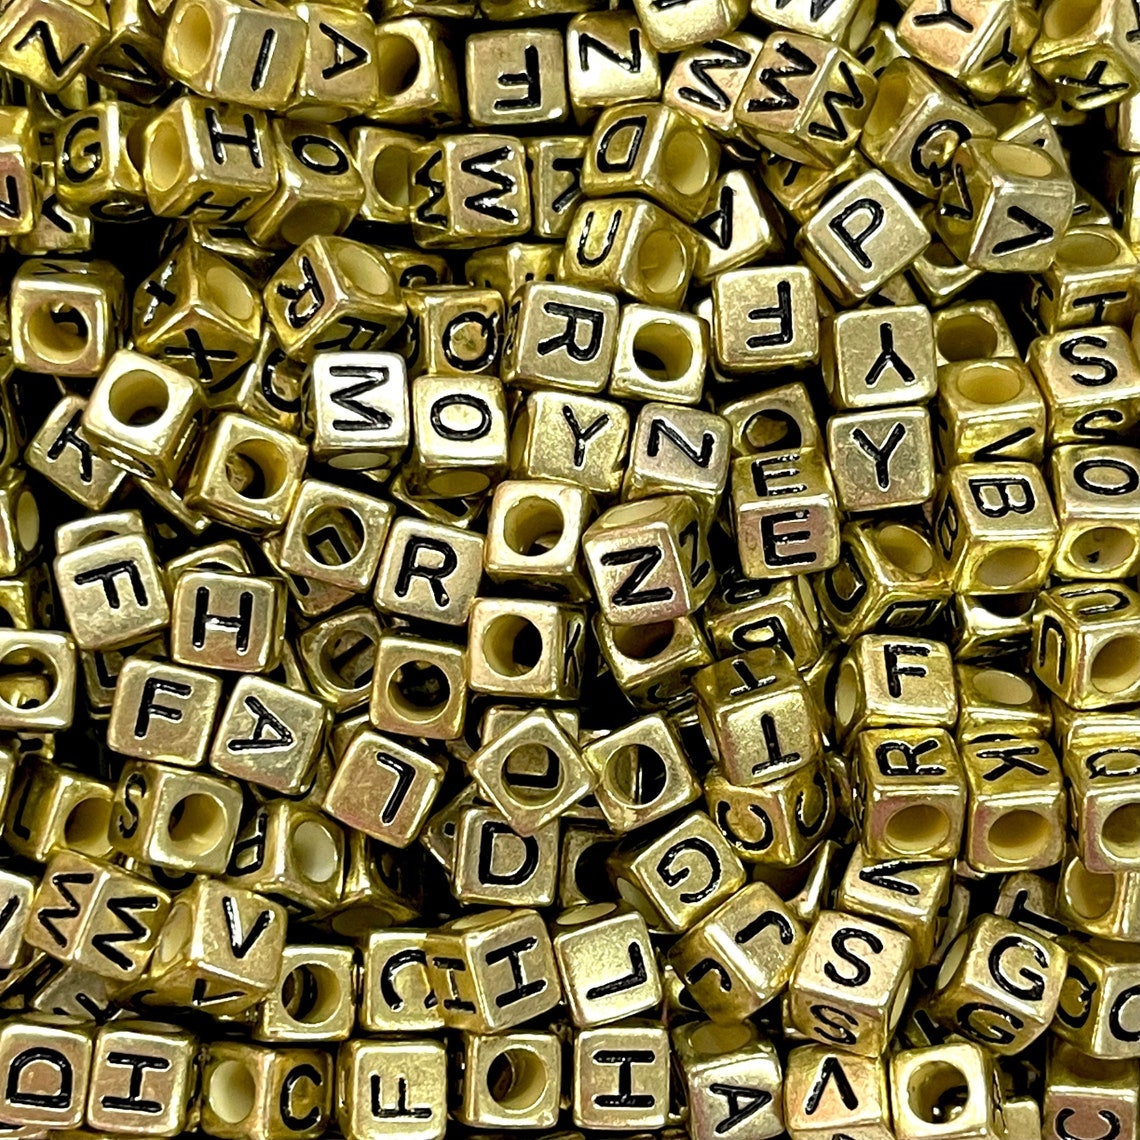  1000pcs Letter Beads Color Alphabet Cube Beads Letter